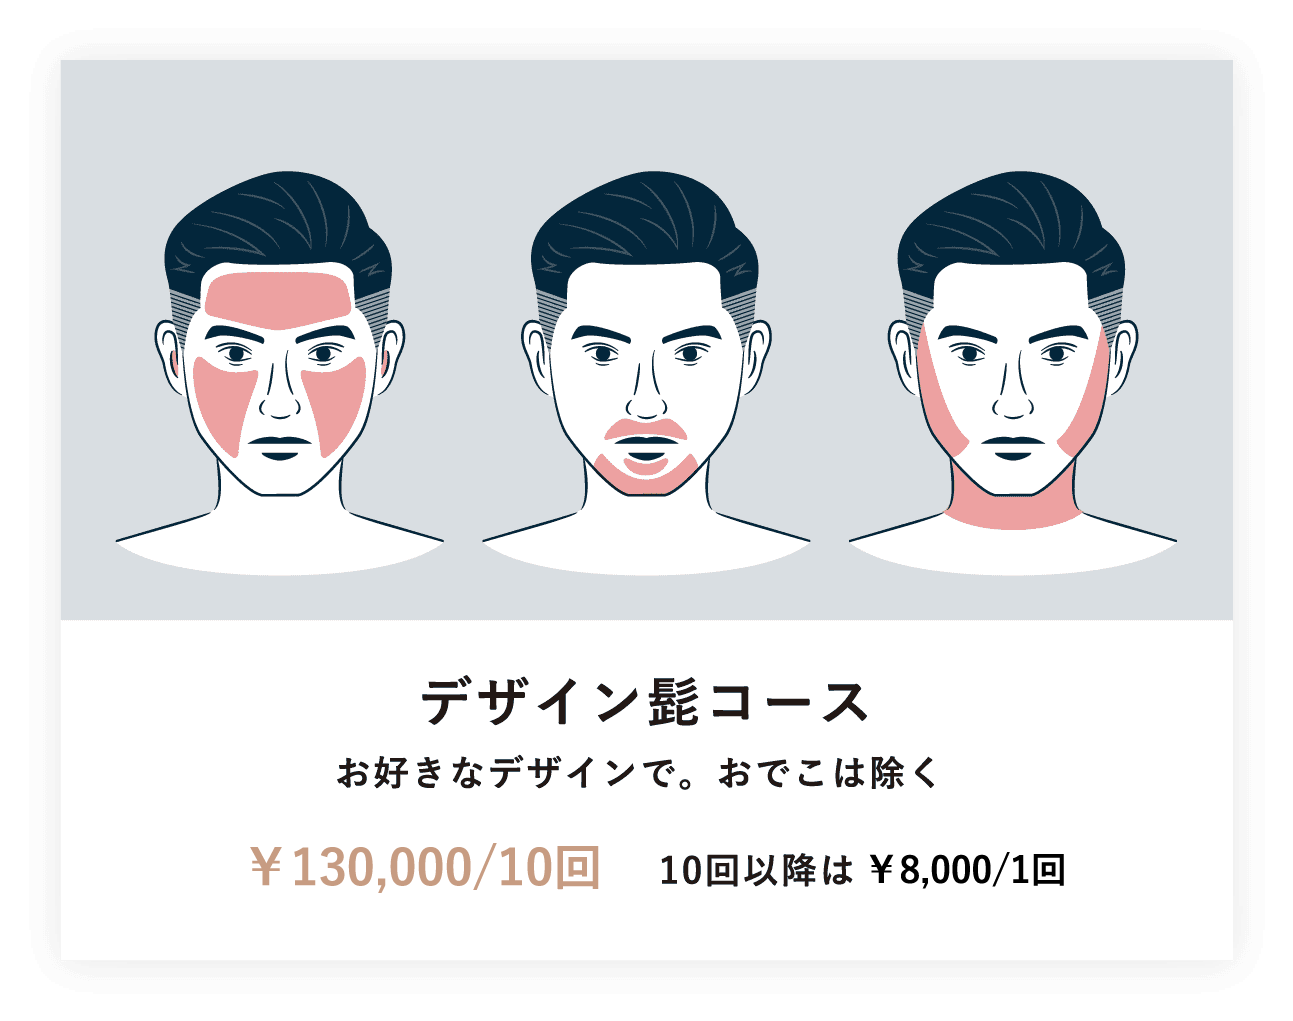 デザイン髭コース お好きなデザインで。おでこは除く ¥140,000/10回　10回以降は¥10,000/1回